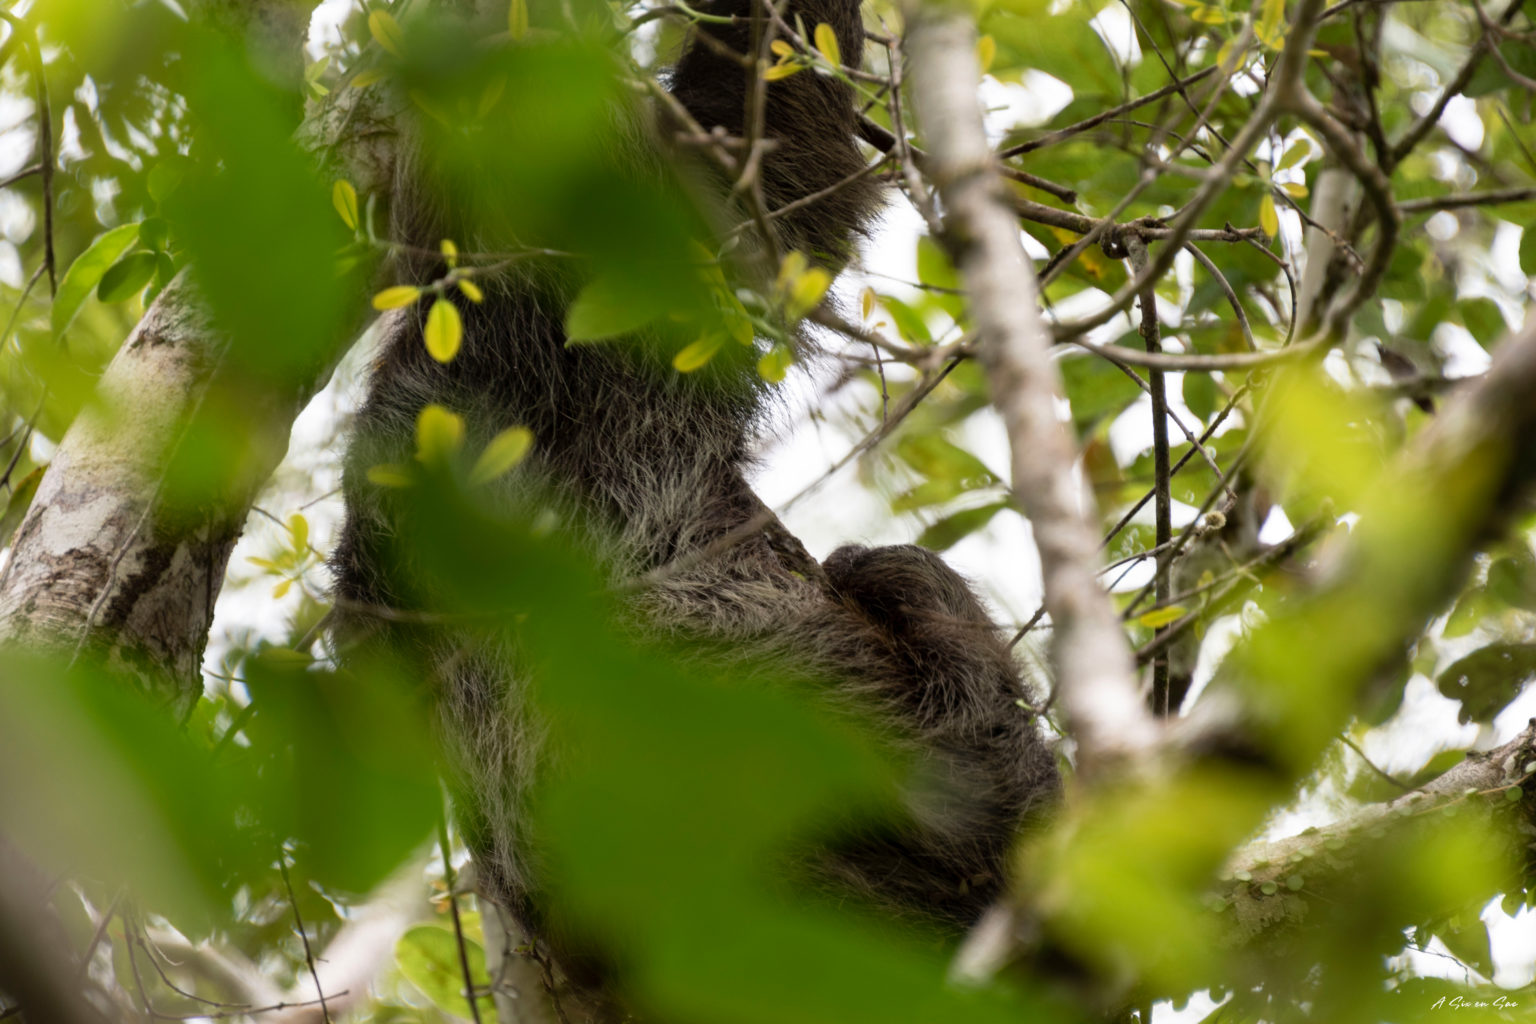 observation entre les feuillages d'un paresseux dans la réserve de Cuyabeno en Amazonie équatorienne